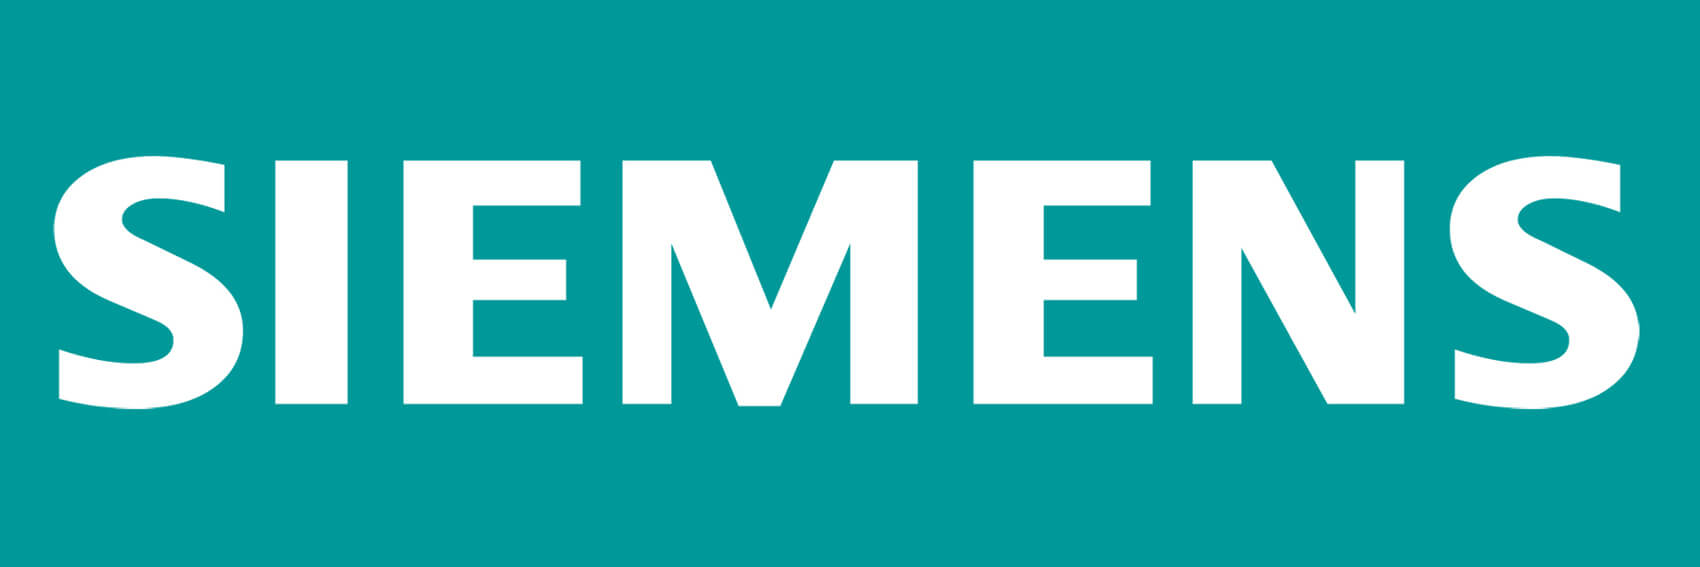 Kölnmesse / Siemens / Gamescom